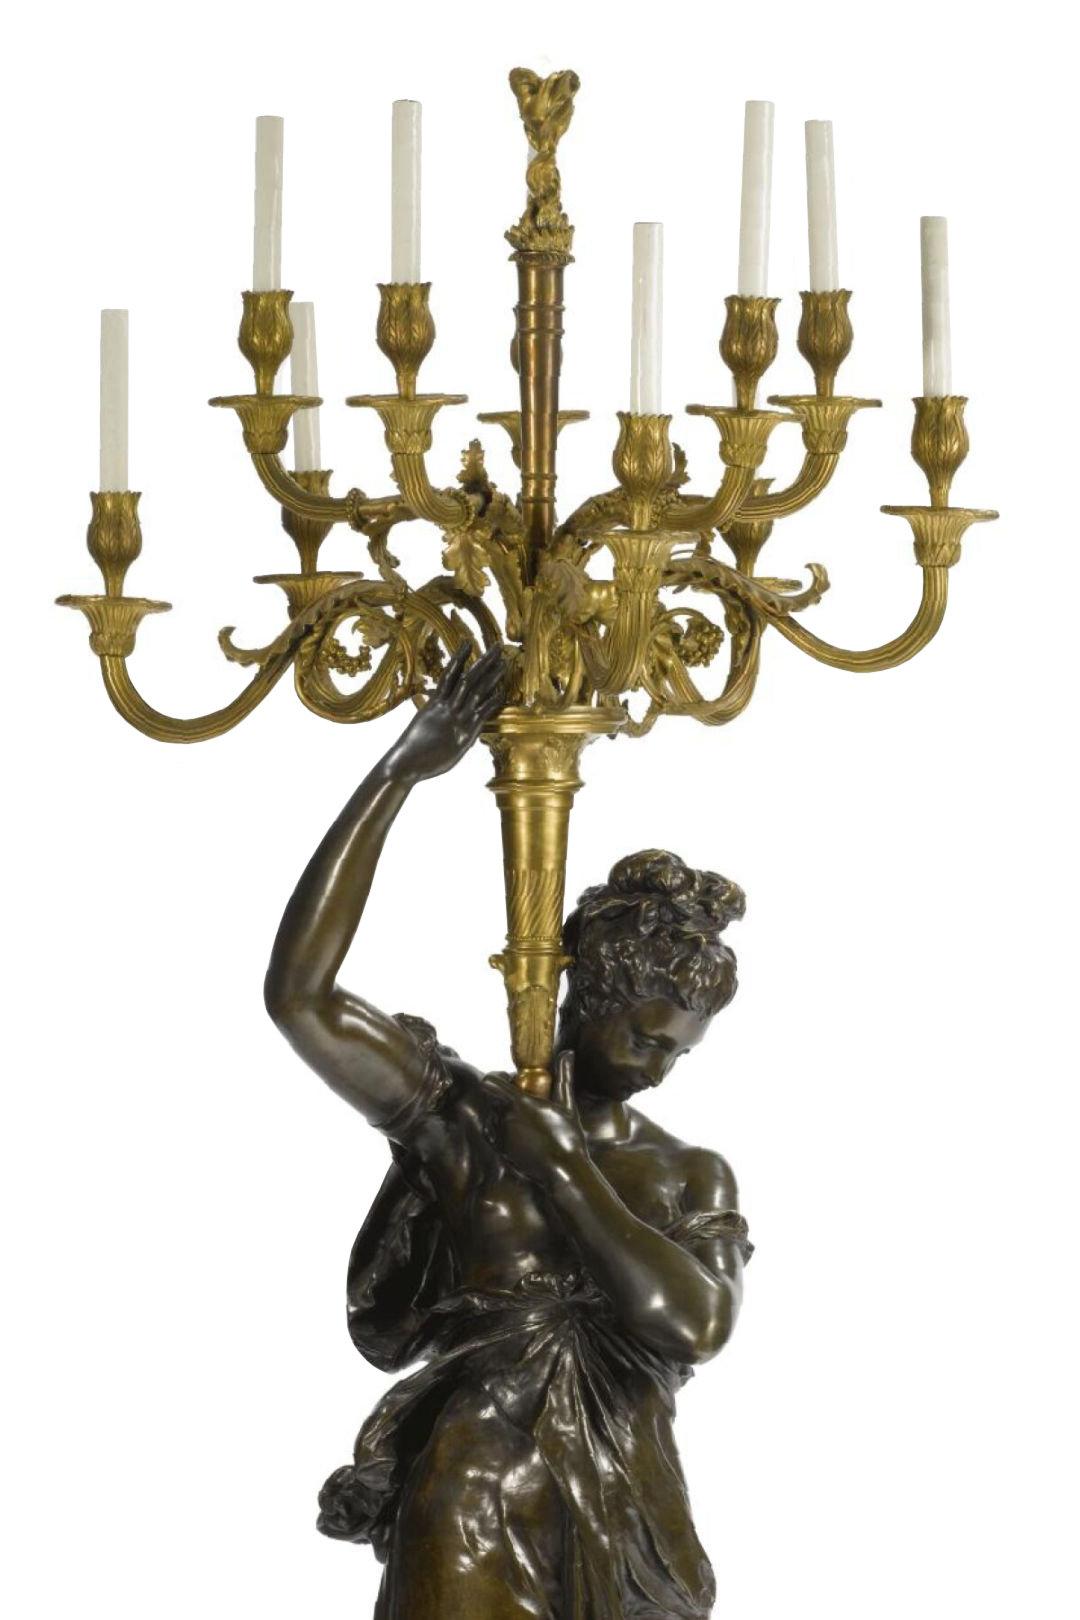 Une très belle et grande lampe candélabre/ Torchère figurative en bronze patiné et doré d'Albert-Ernest Carrier-Belleuse (1824-1887).
Câblé pour l'électricité.
Il est accompagné d'un piédestal moderne en marbre noir. ( un ajout beaucoup plus